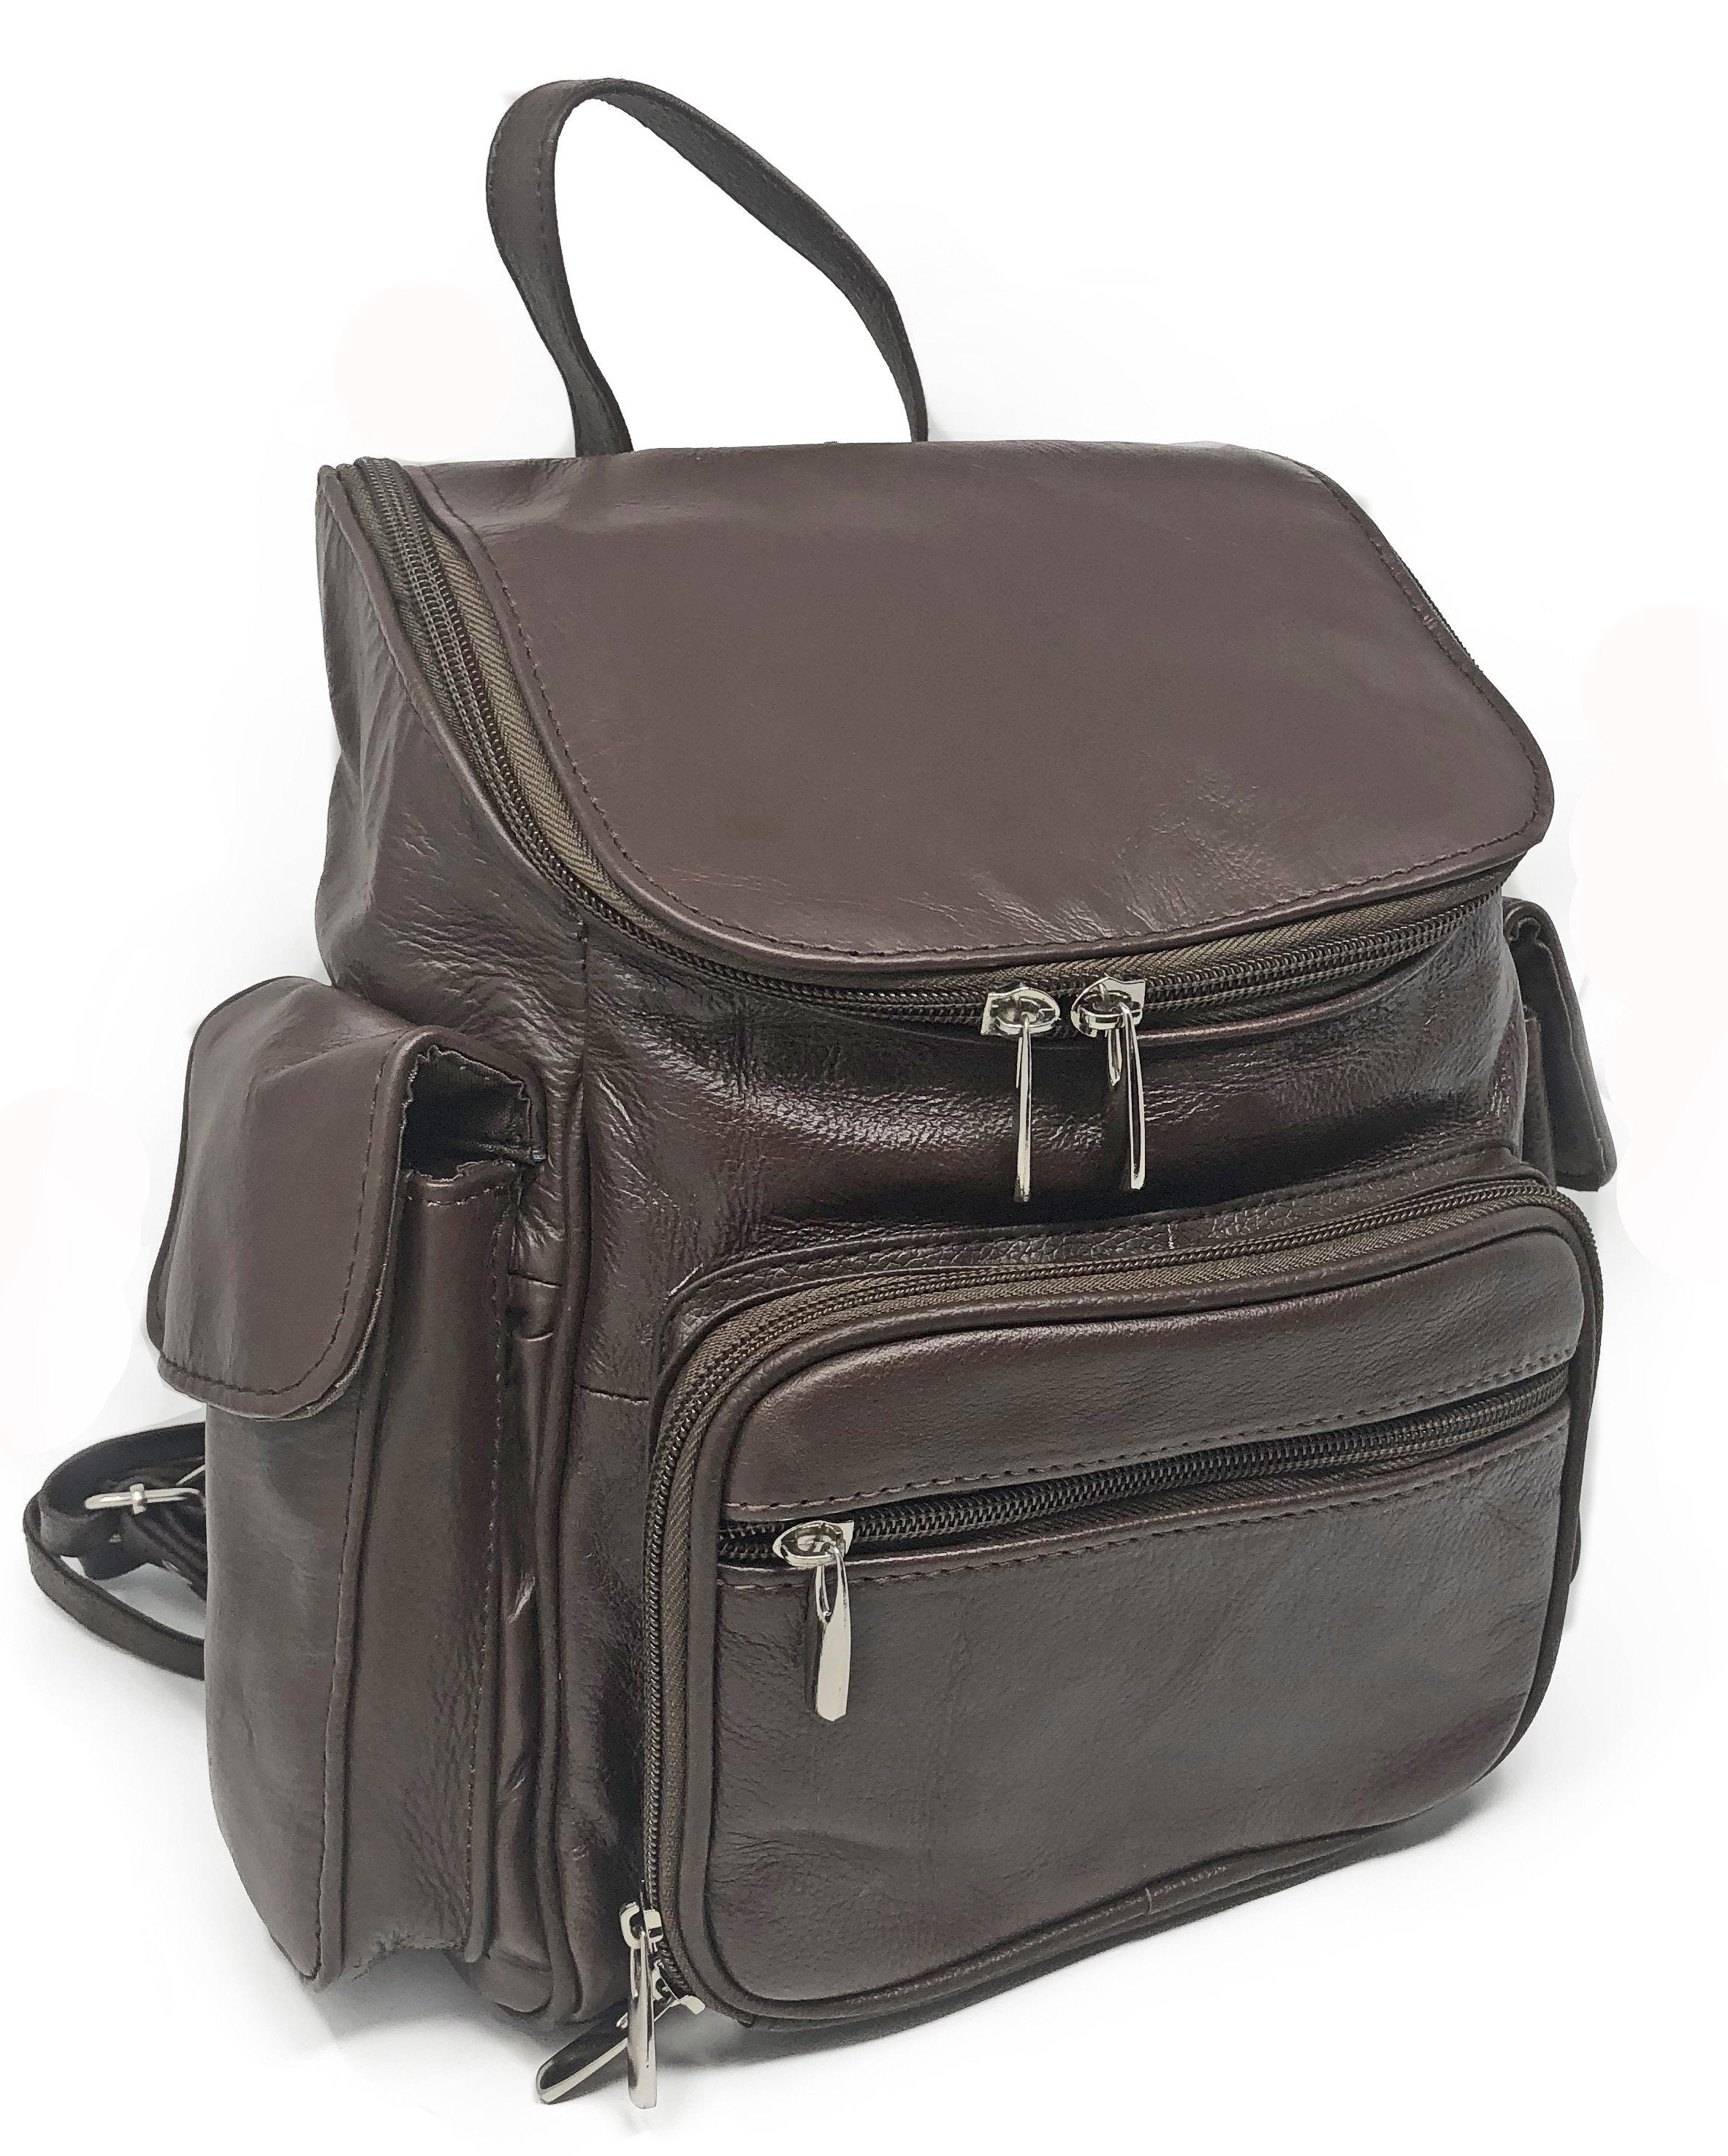 Amanda's Unisex Leather Backpack